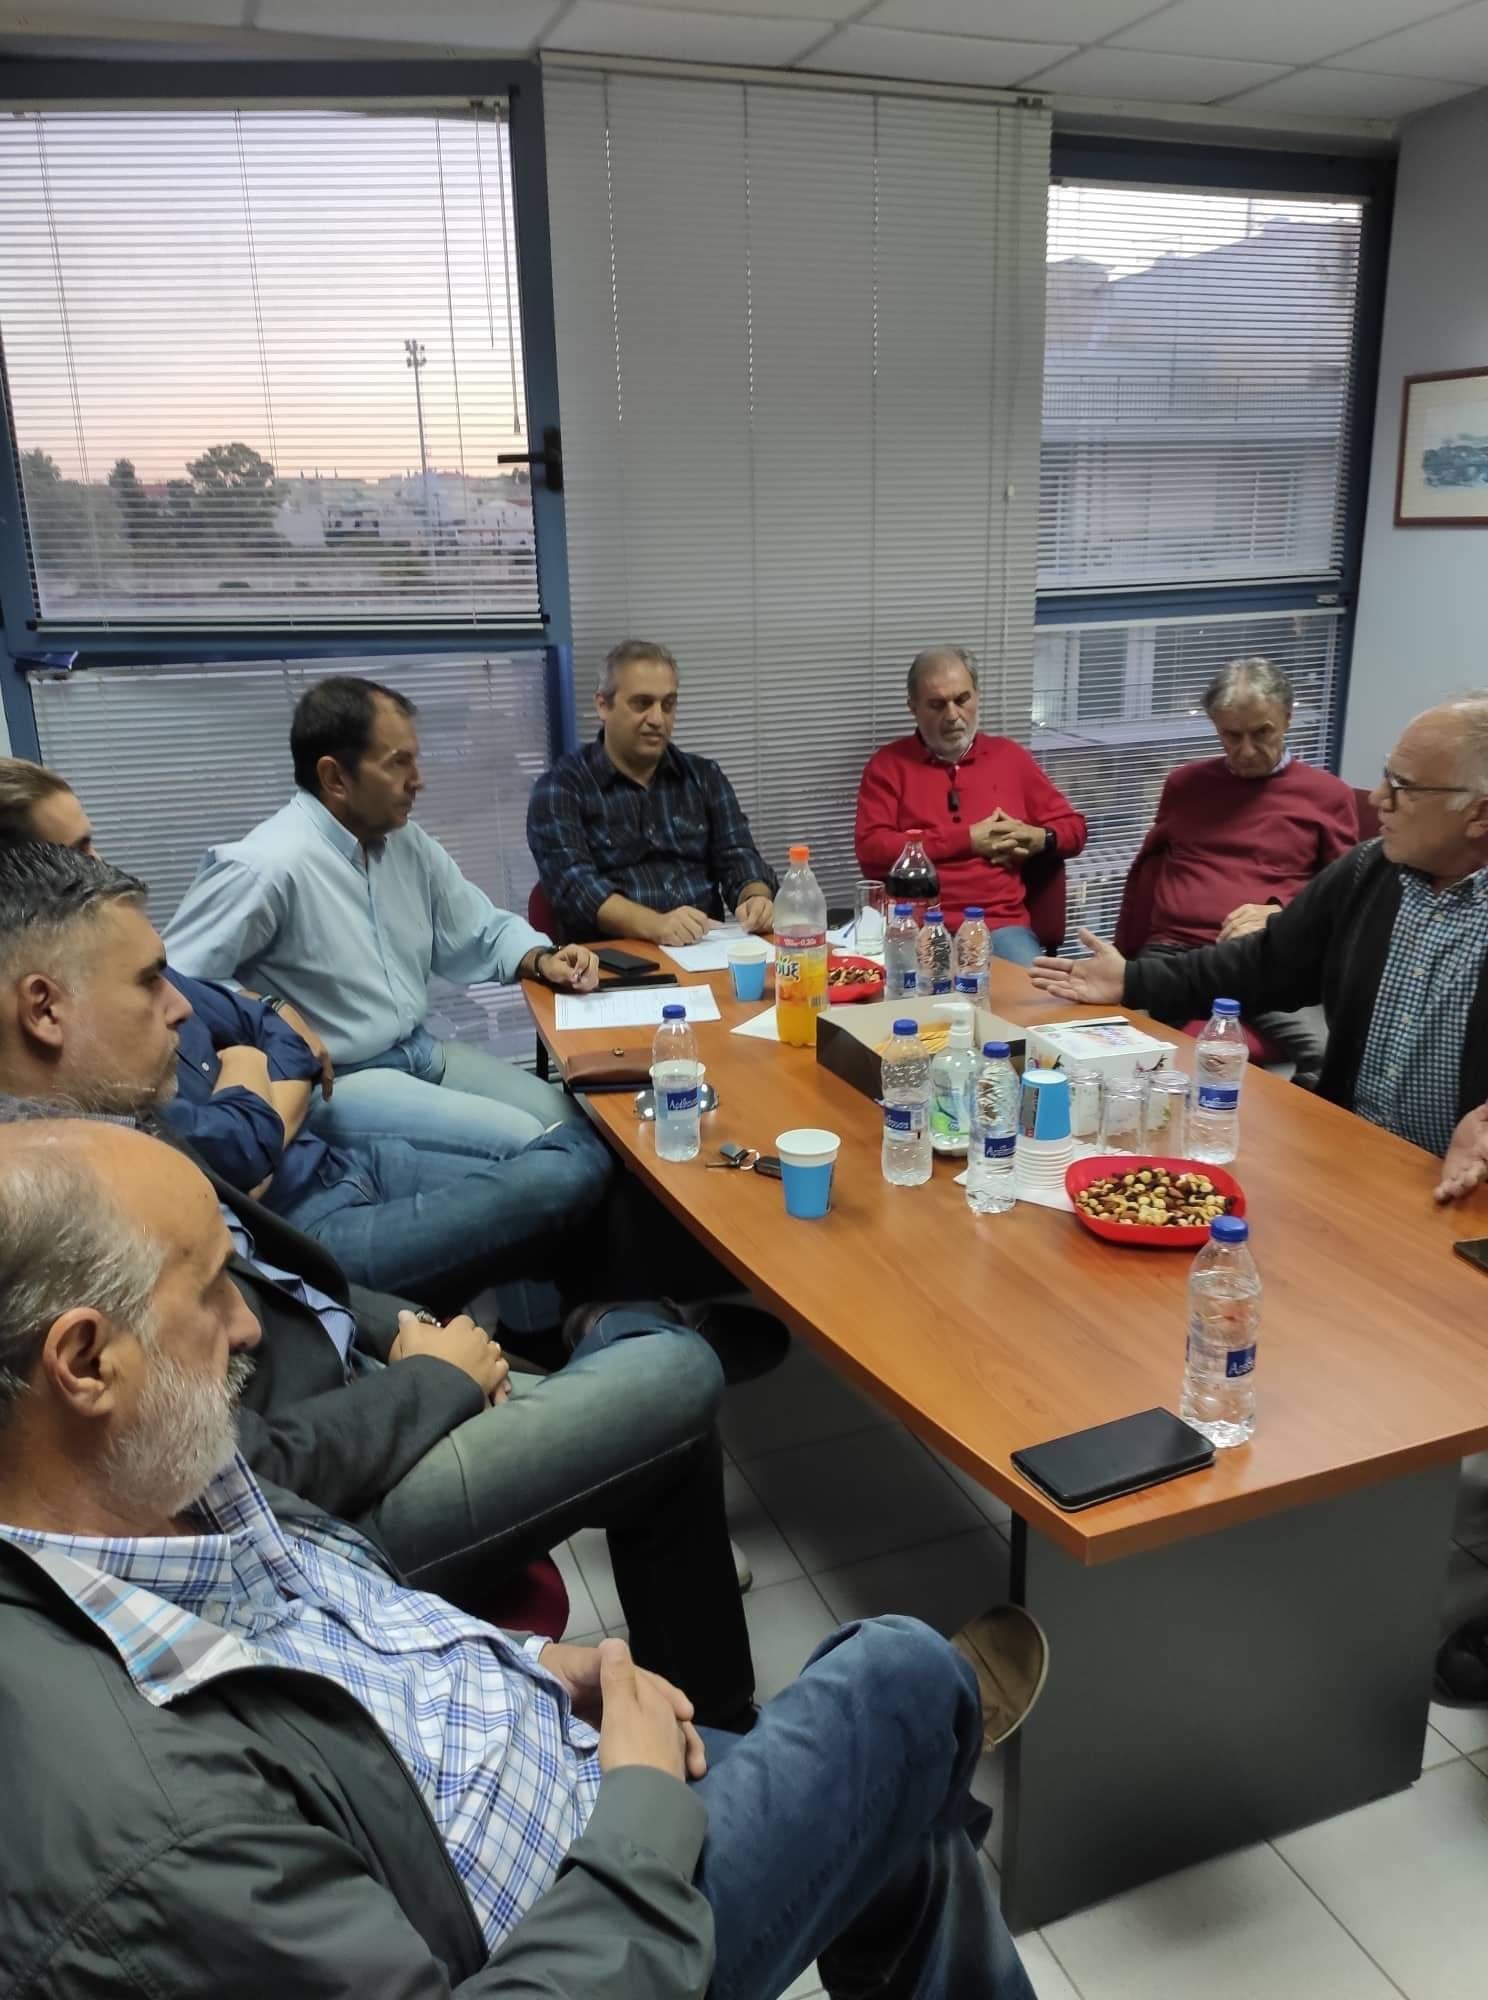 Χαλκίδα: Στη συνεδρίαση του Οικονομικού Επιμελητηρίου ο Κώστας Ρουσσόπουλος